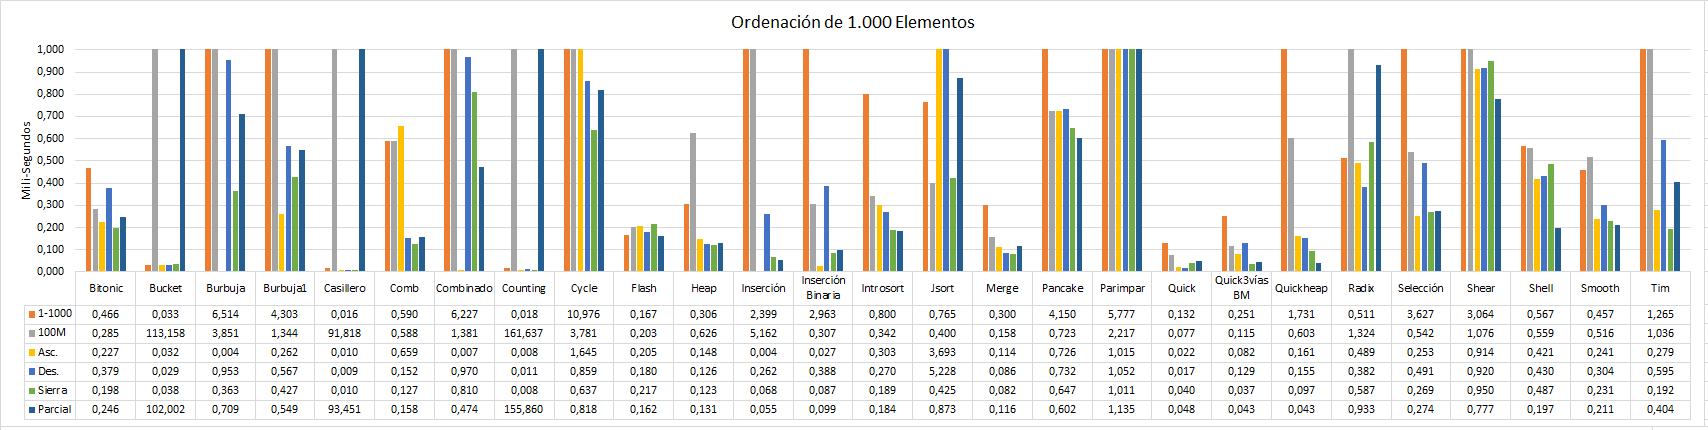 Rendimientos ordenación de 1.000 elementos